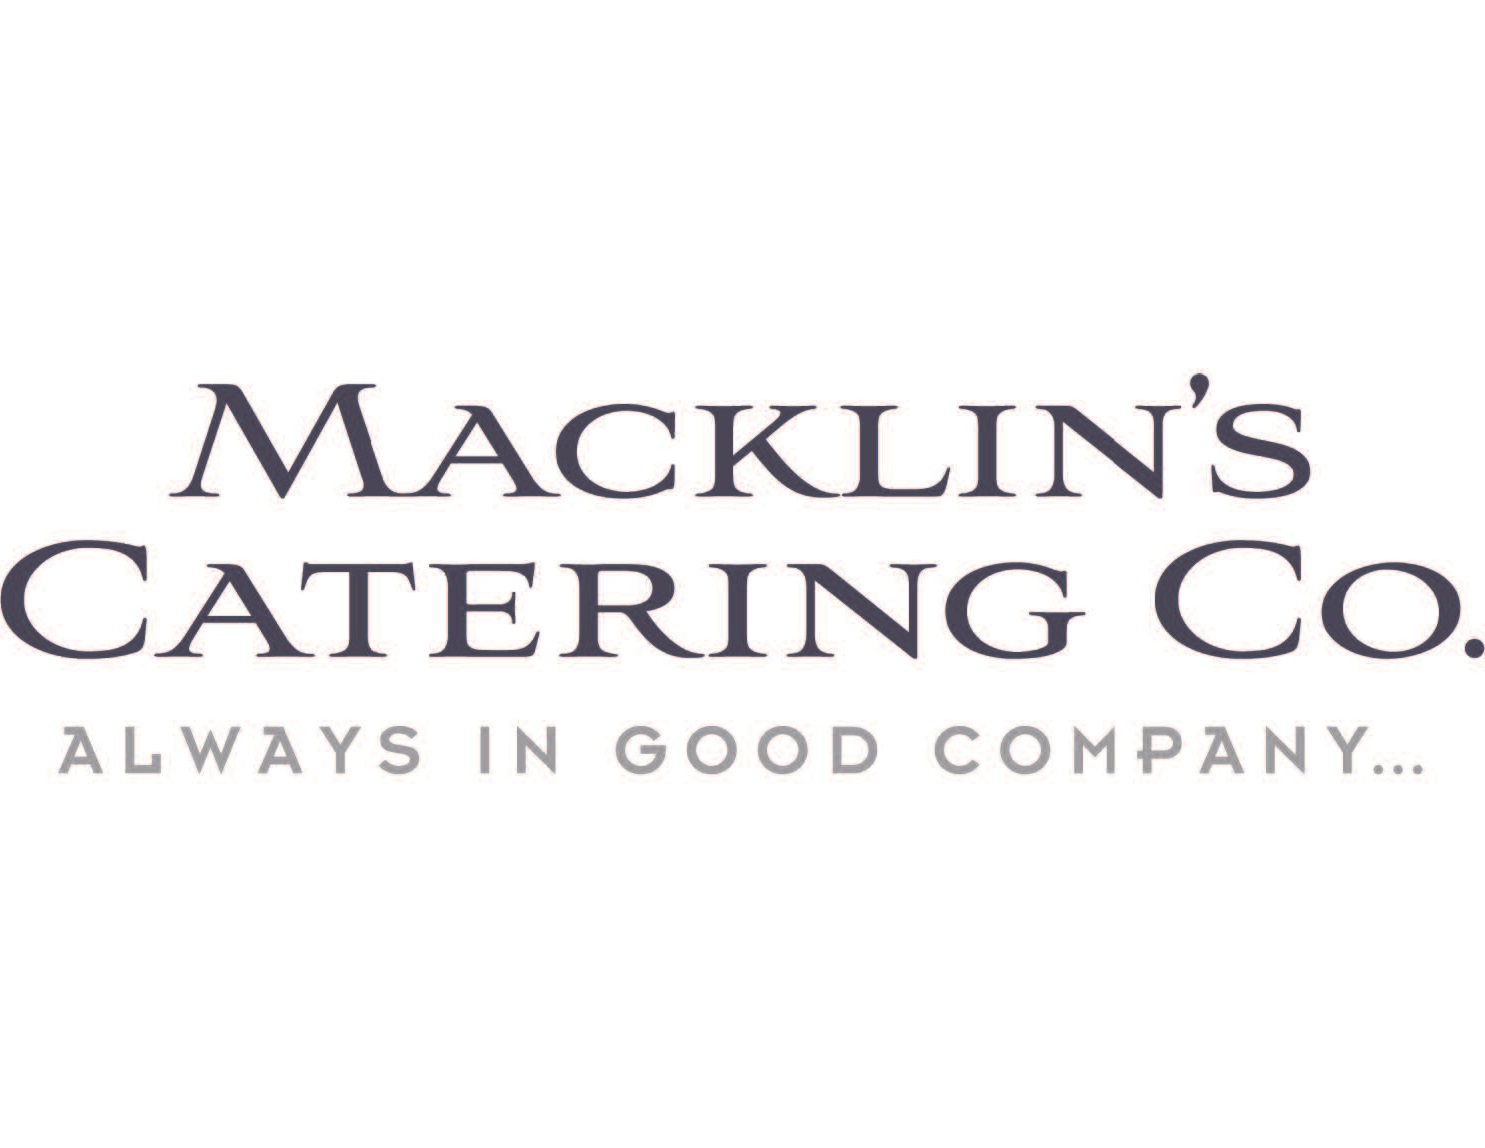 Macklin's Catering Company